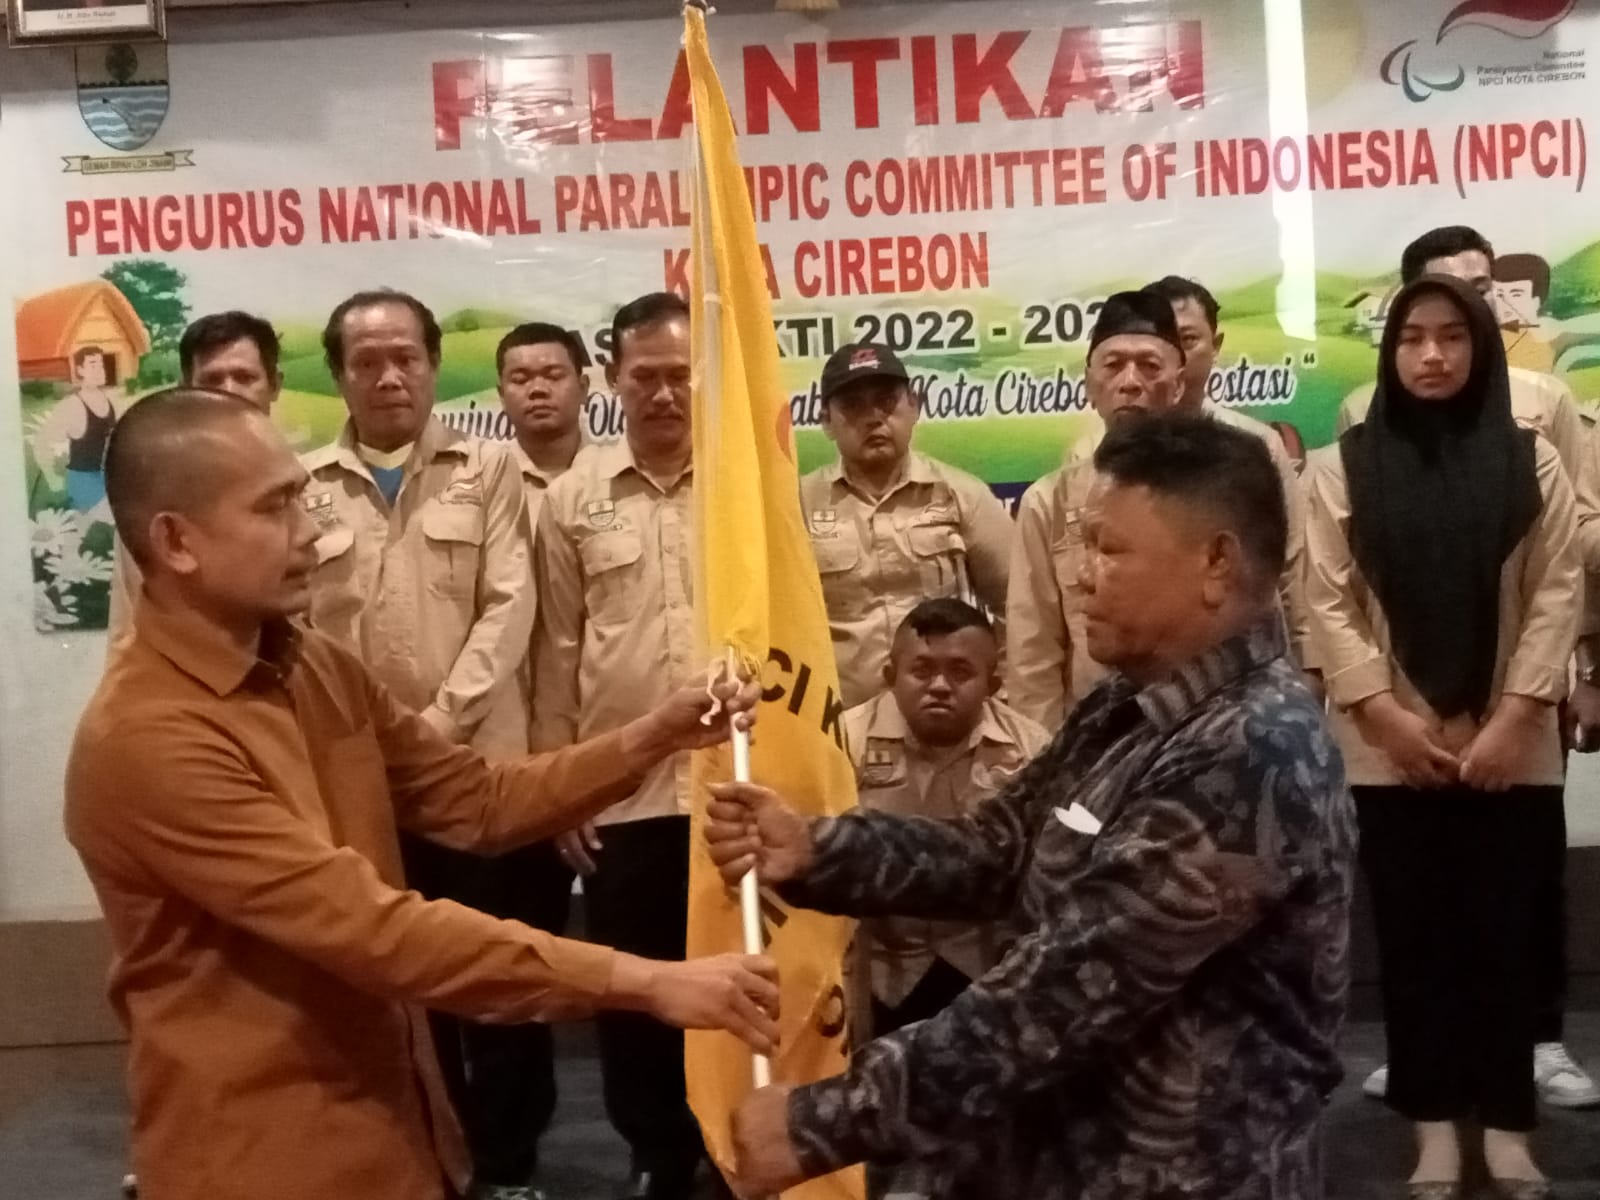 Sasmita Kembali Terpilih Sebagai Ketua NPCI Kota Cirebon, Inilah Program yang Bakal Dikerjakan